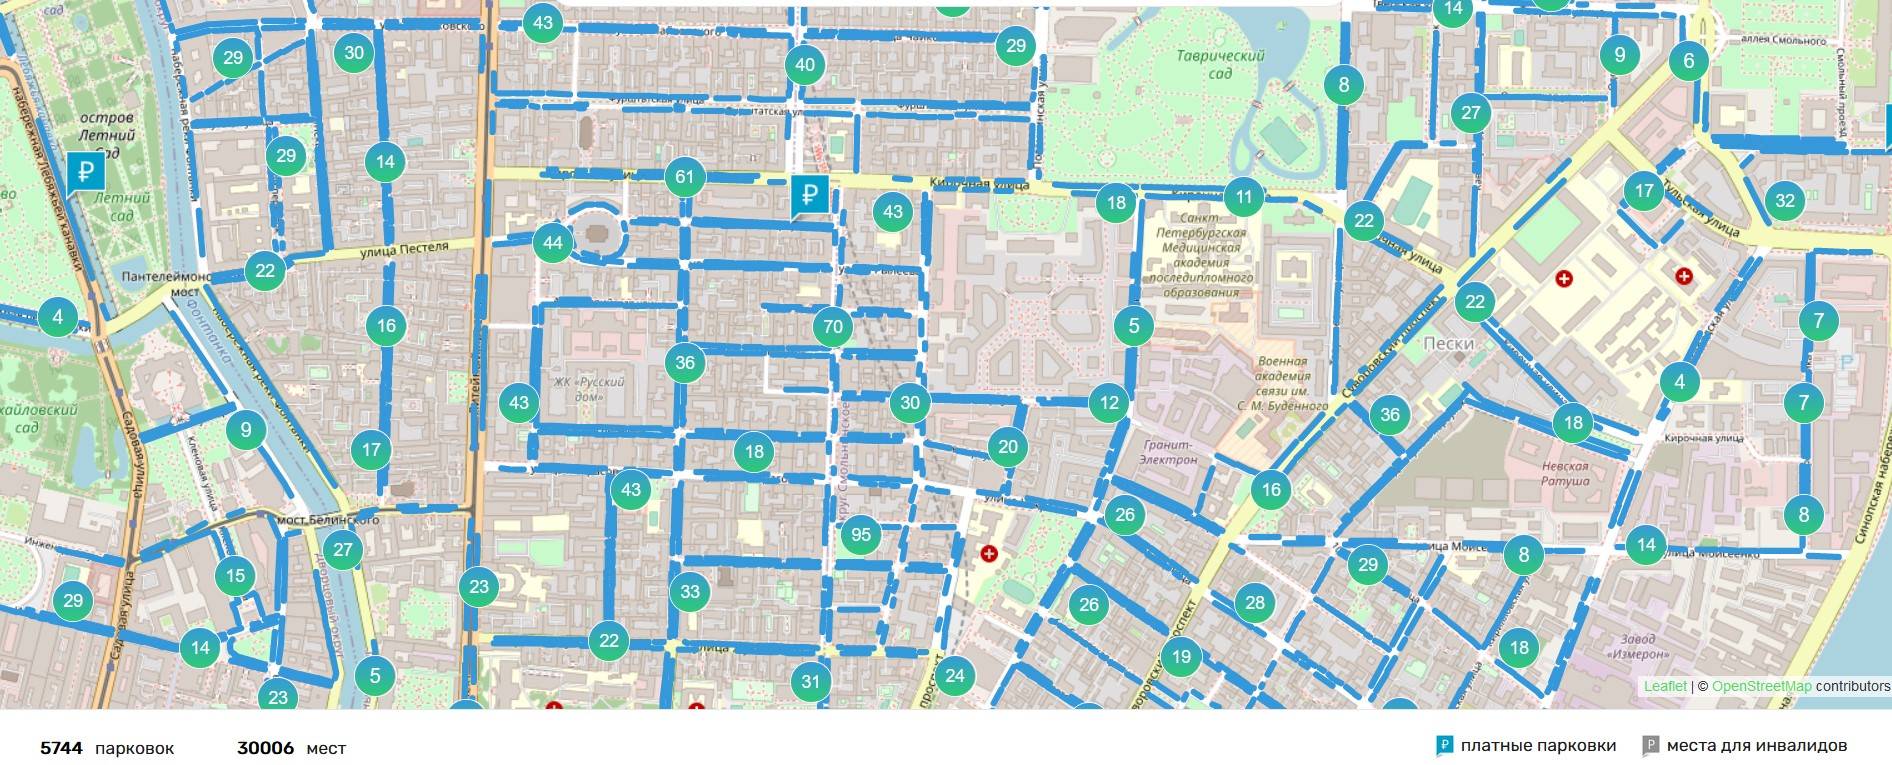 Парковочная зона. Зона платной парковки 7805 Санкт-Петербург. Зоны платной парковки с номерами зона. Зоны платных парковок в СПБ на карте 2022.